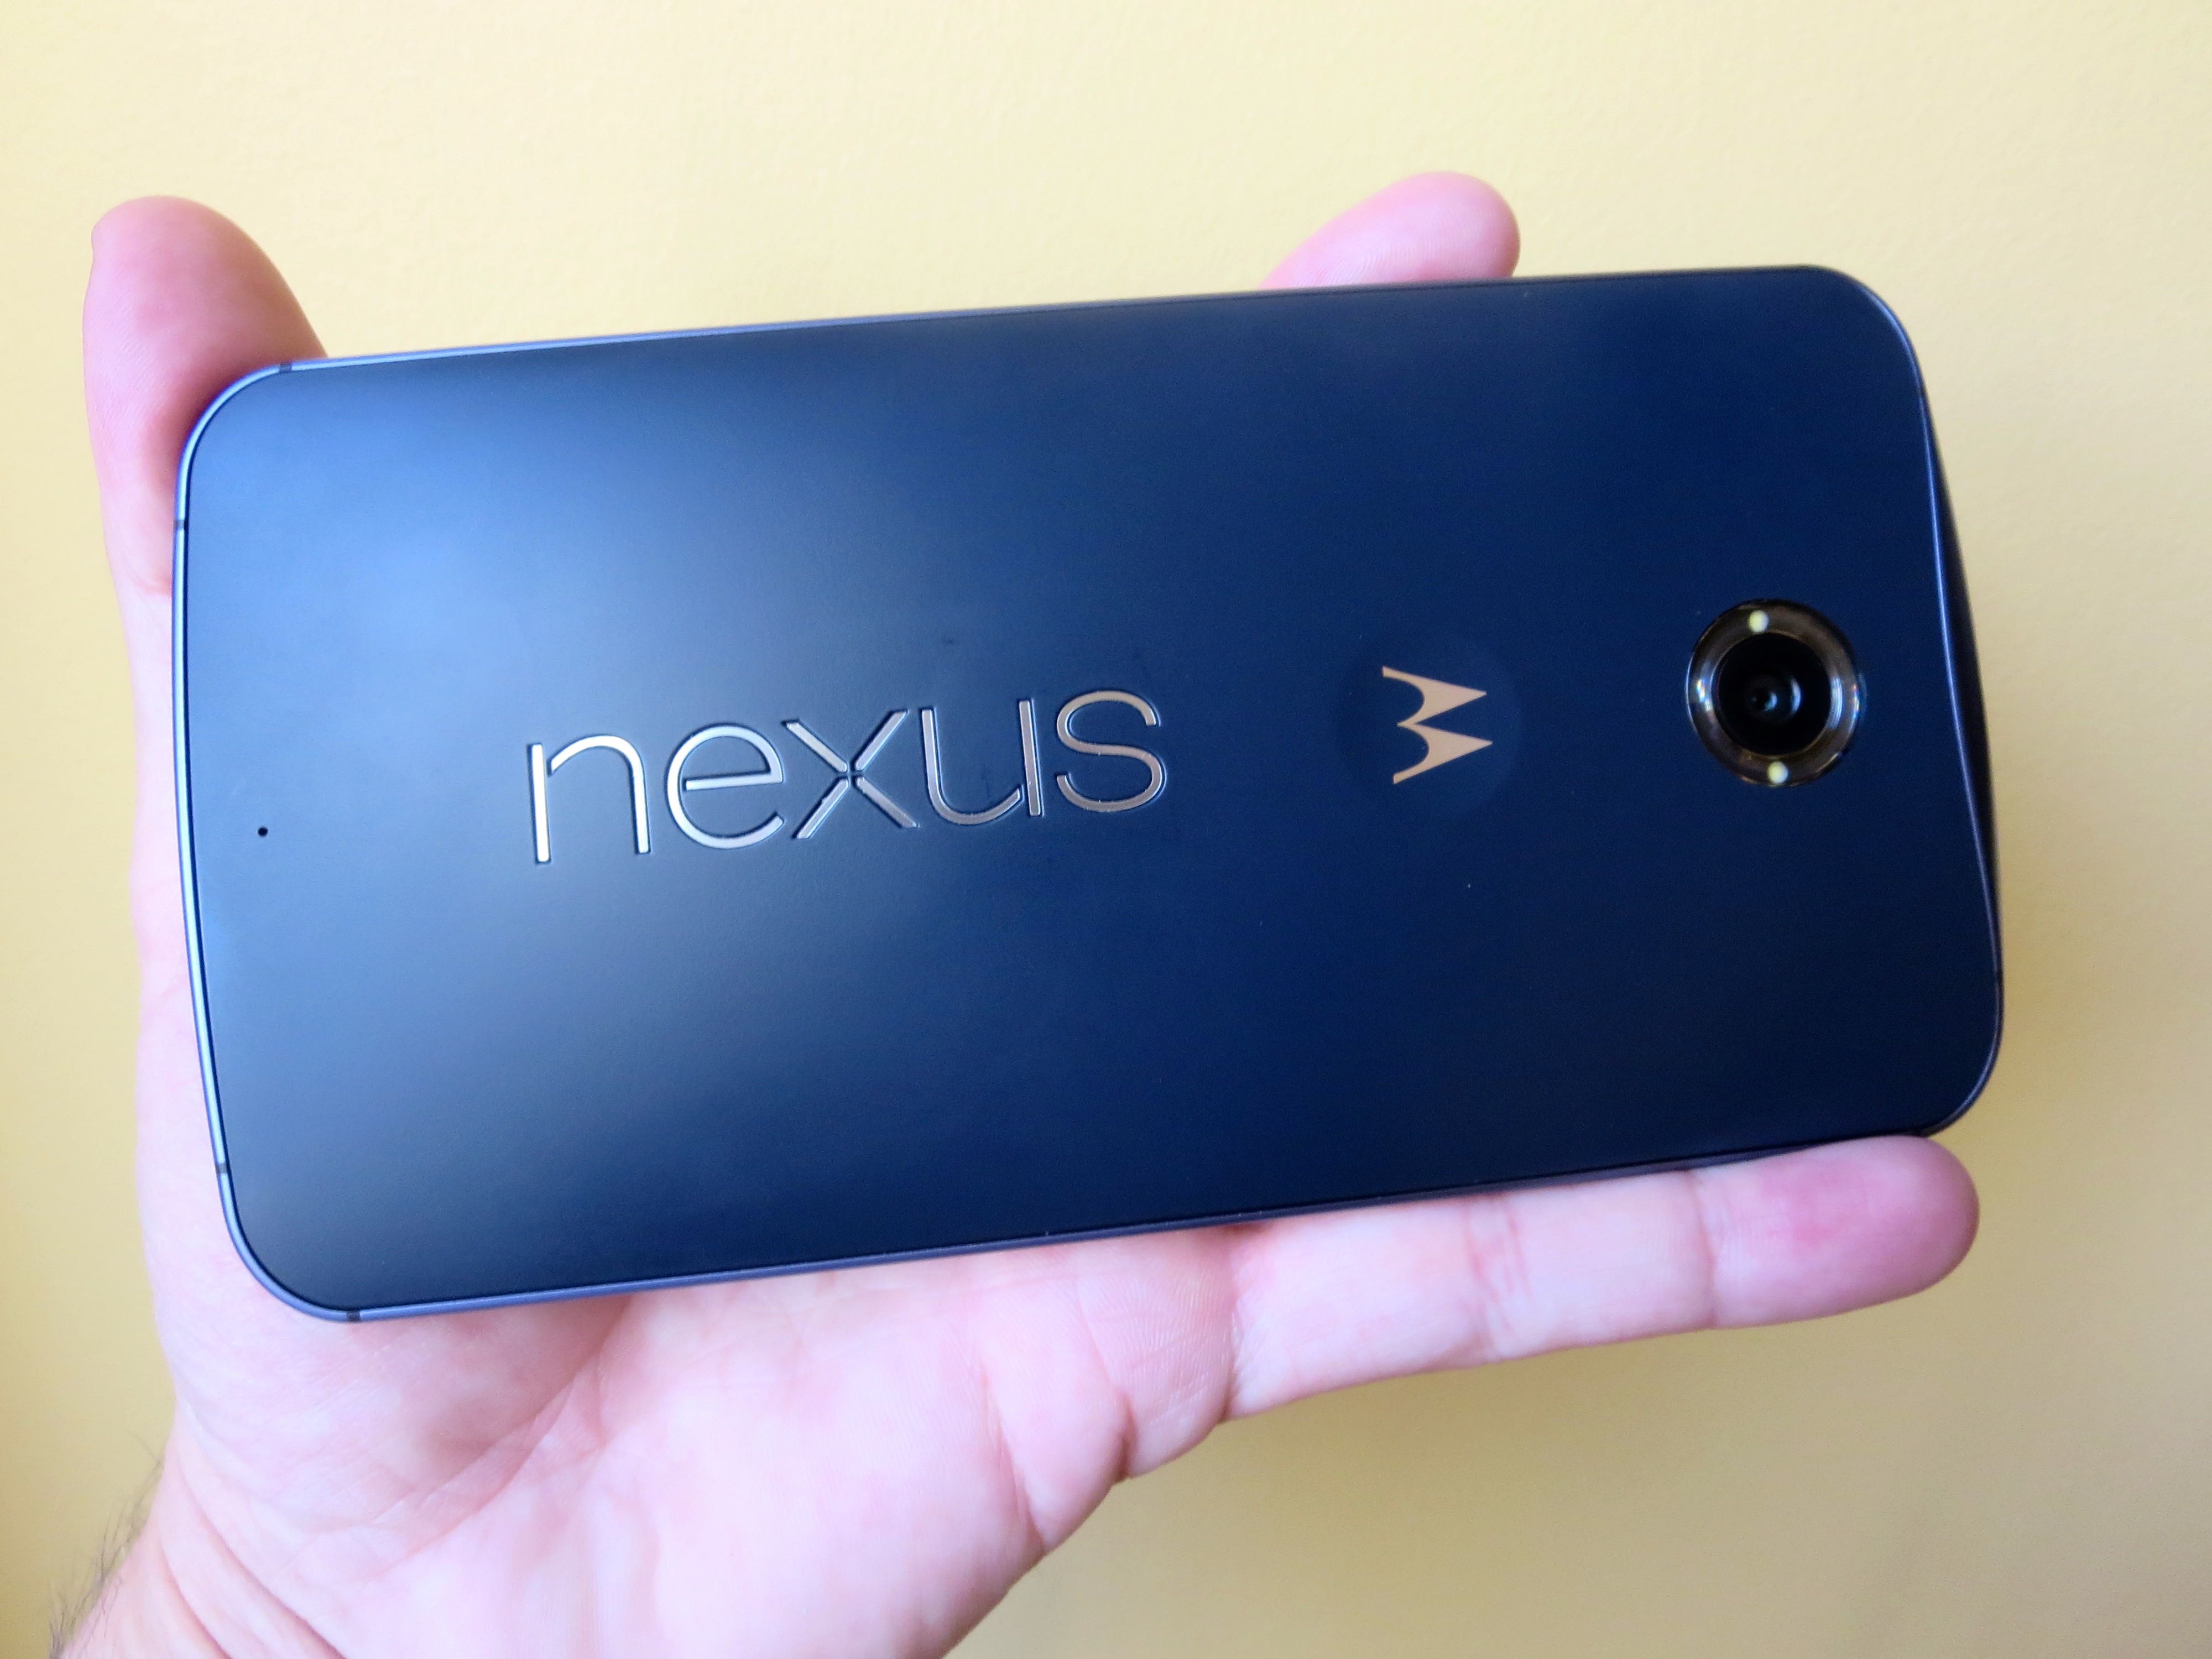 Nexus 6 in hand